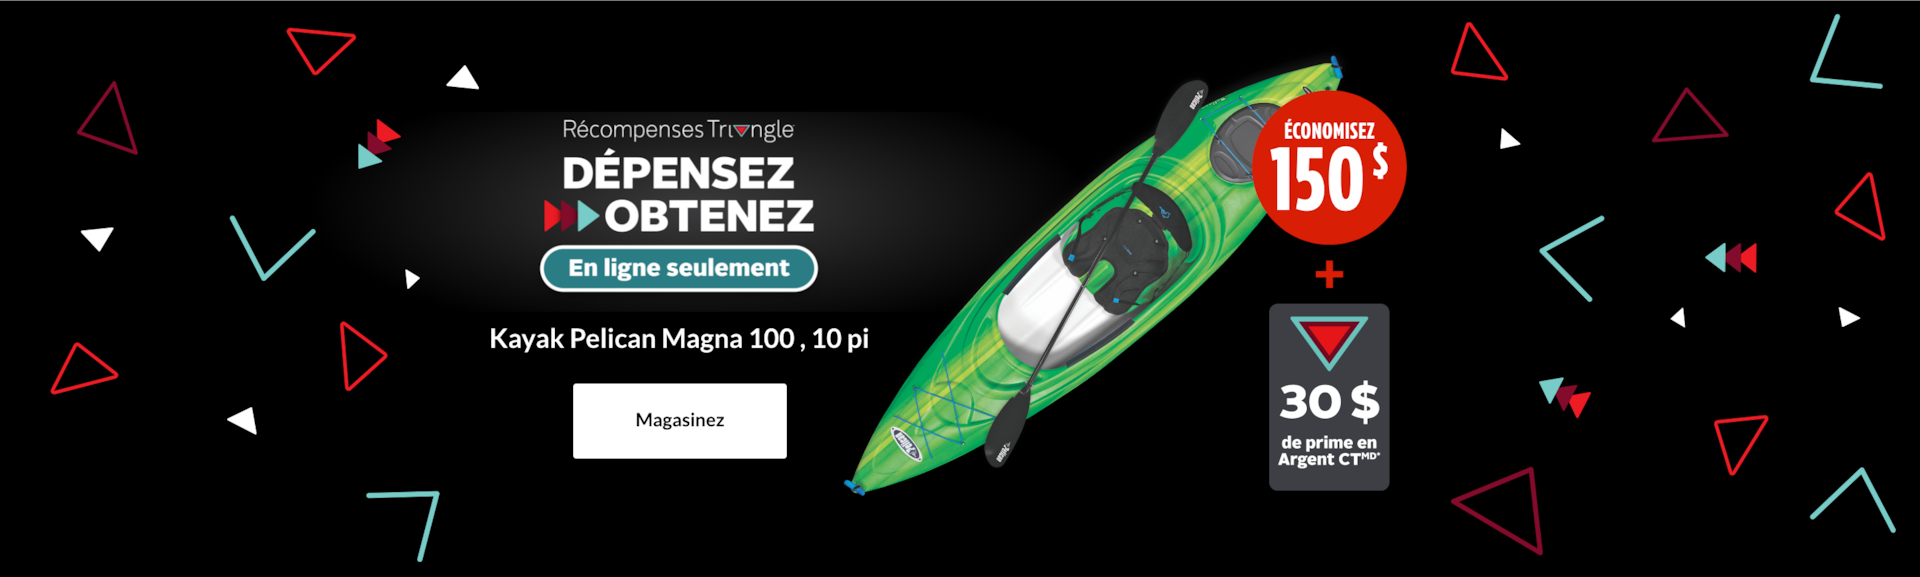 Kayak Pelican Magna 100 , 10 pi  ÉCONOMISEZ 150 $ + GAGNEZ une prime de 30 $ en Argent CT